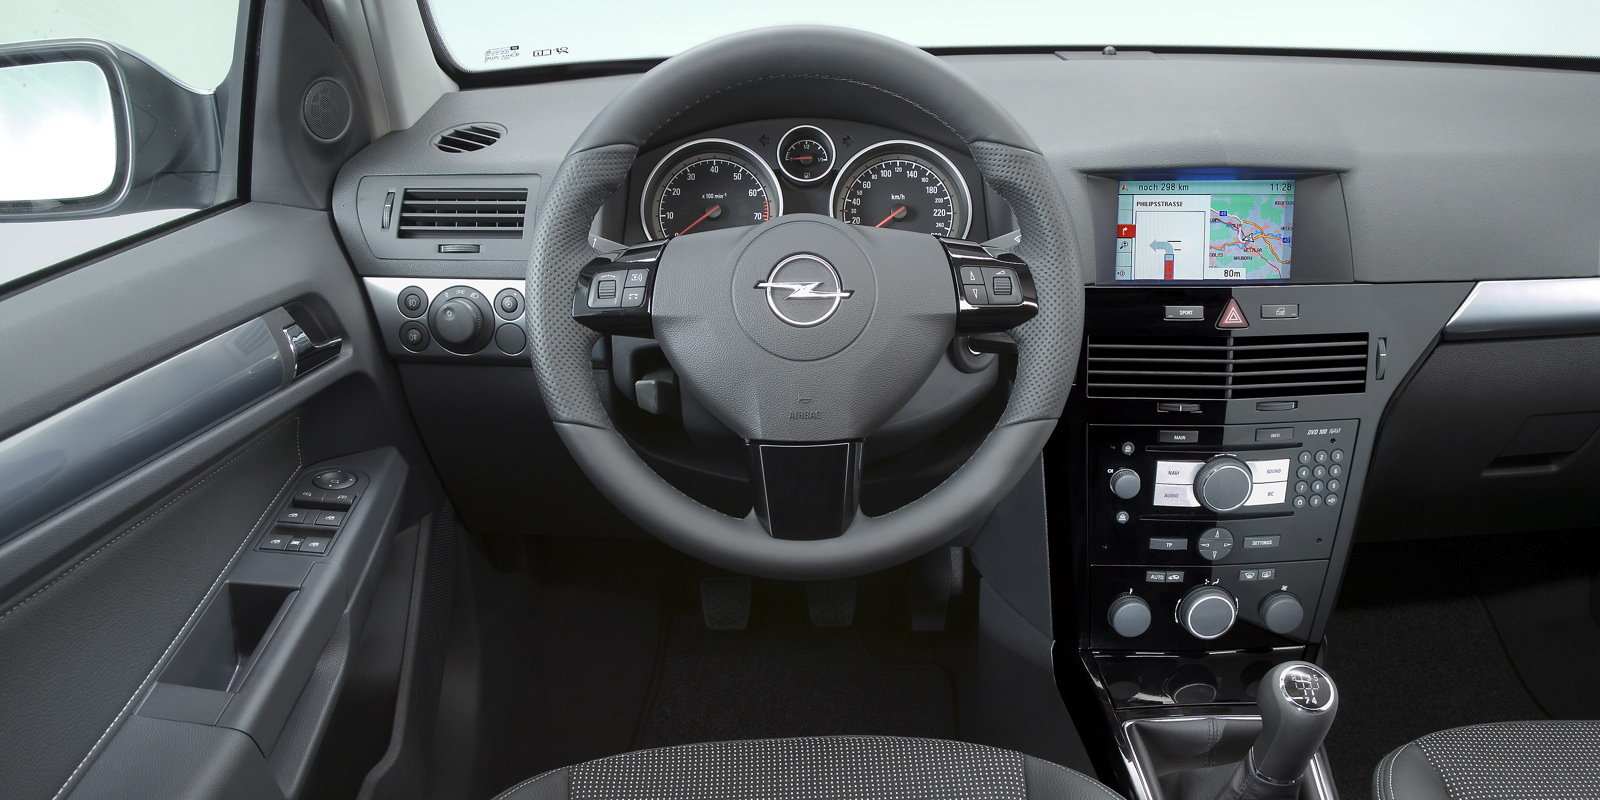 https://cdn.autodiscount.fr/cdn-autodiscount/uploads/2021/05/Opel-Astra-GTC-1.jpg?width=250&format=auto